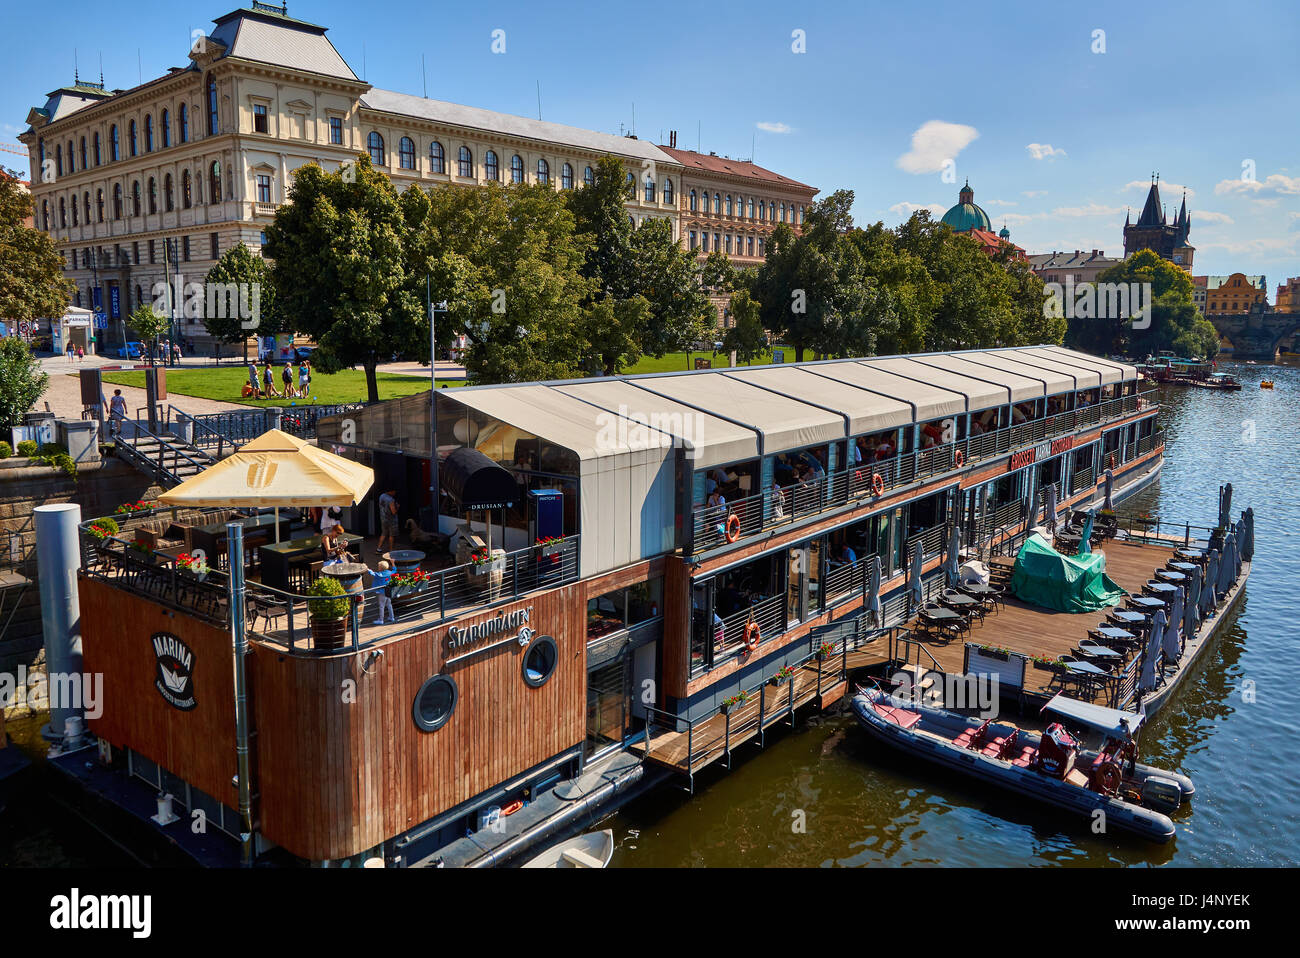 Restaurant Marina on the Vltava river in Prague Czechia Stock Photo